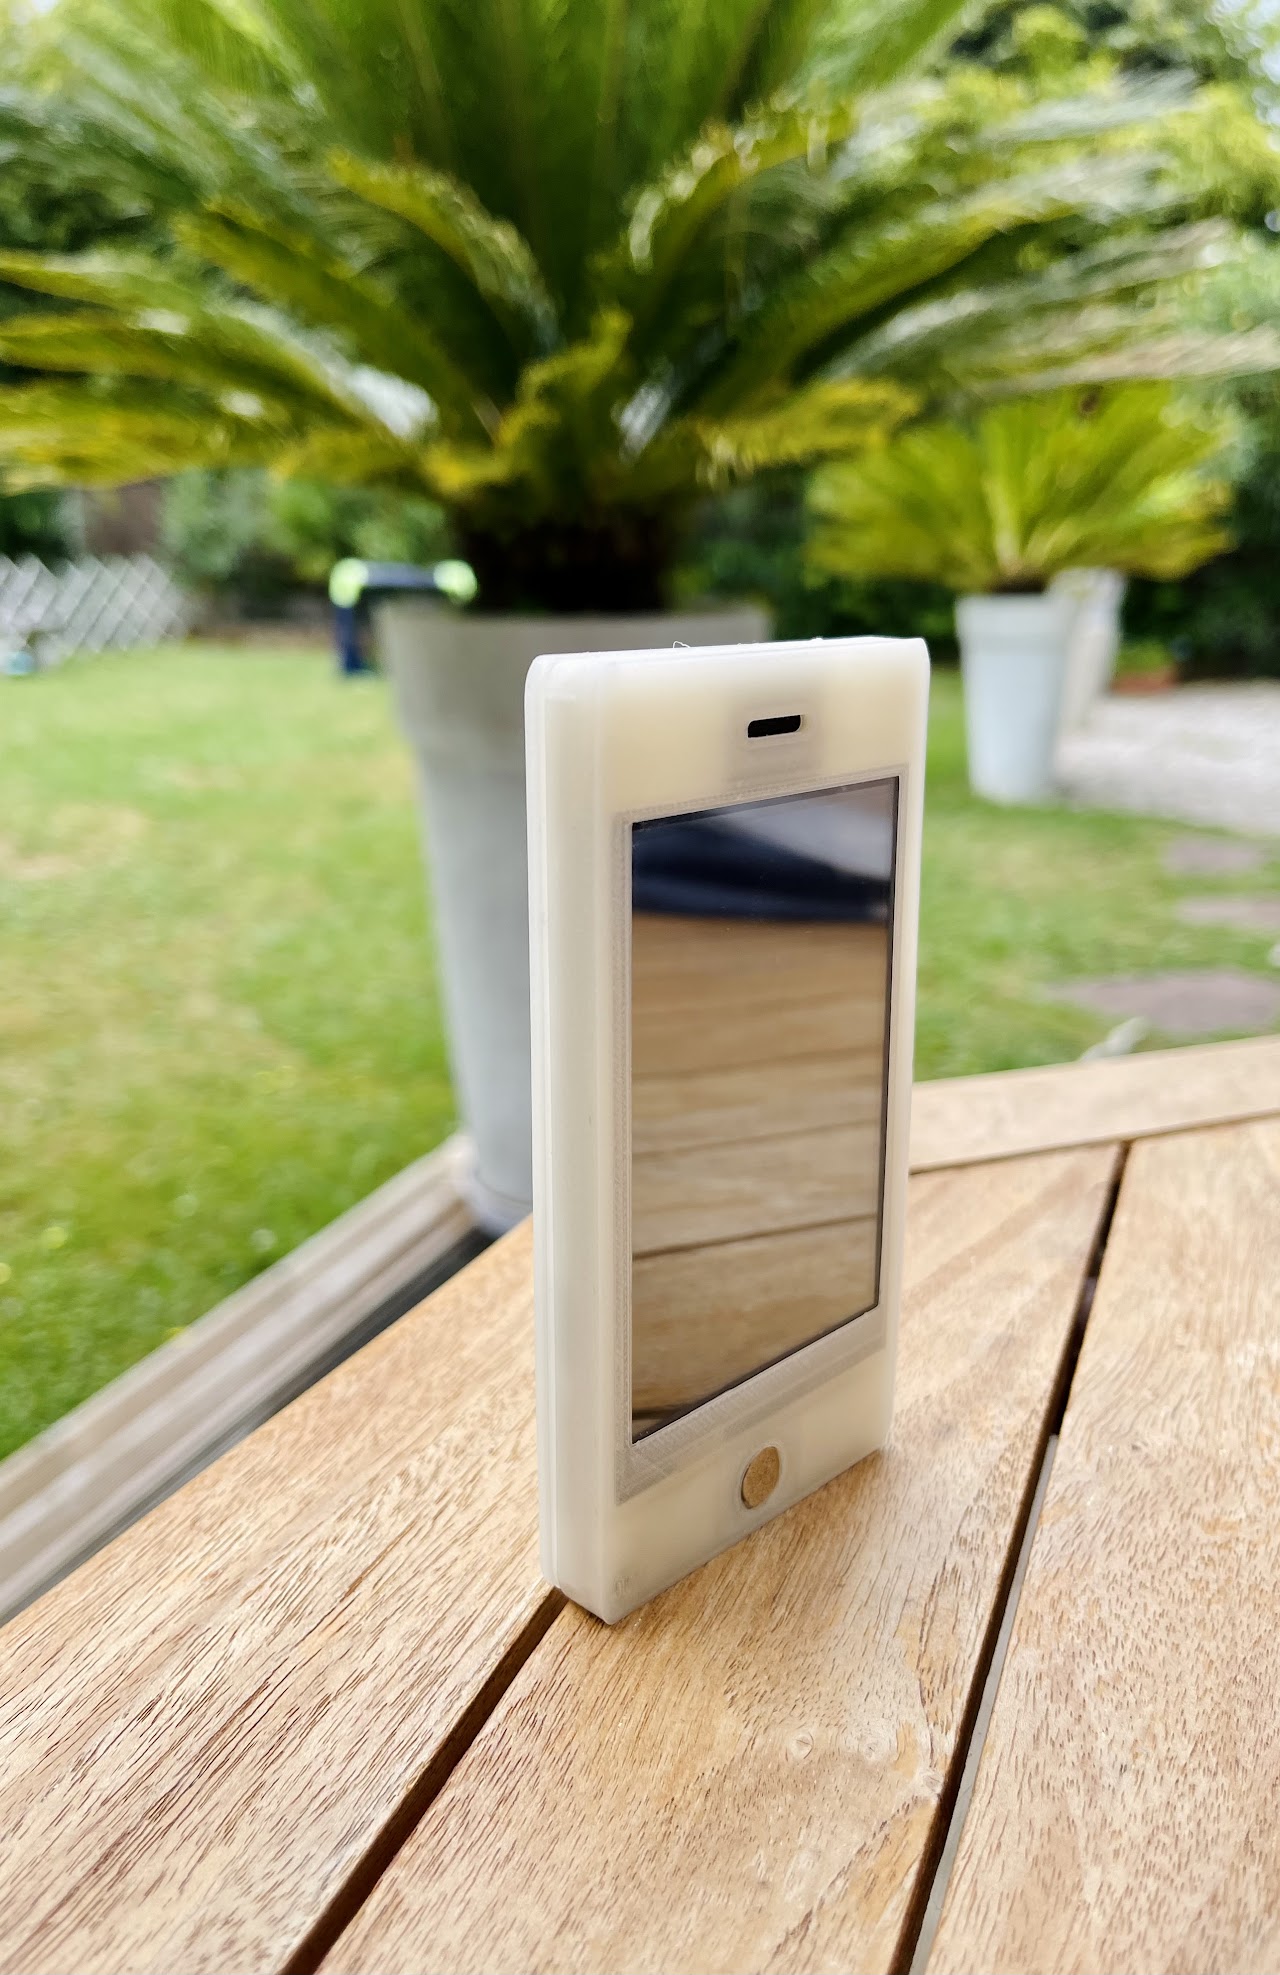 Image du téléphone de face posé verticalement sur une table en bois.